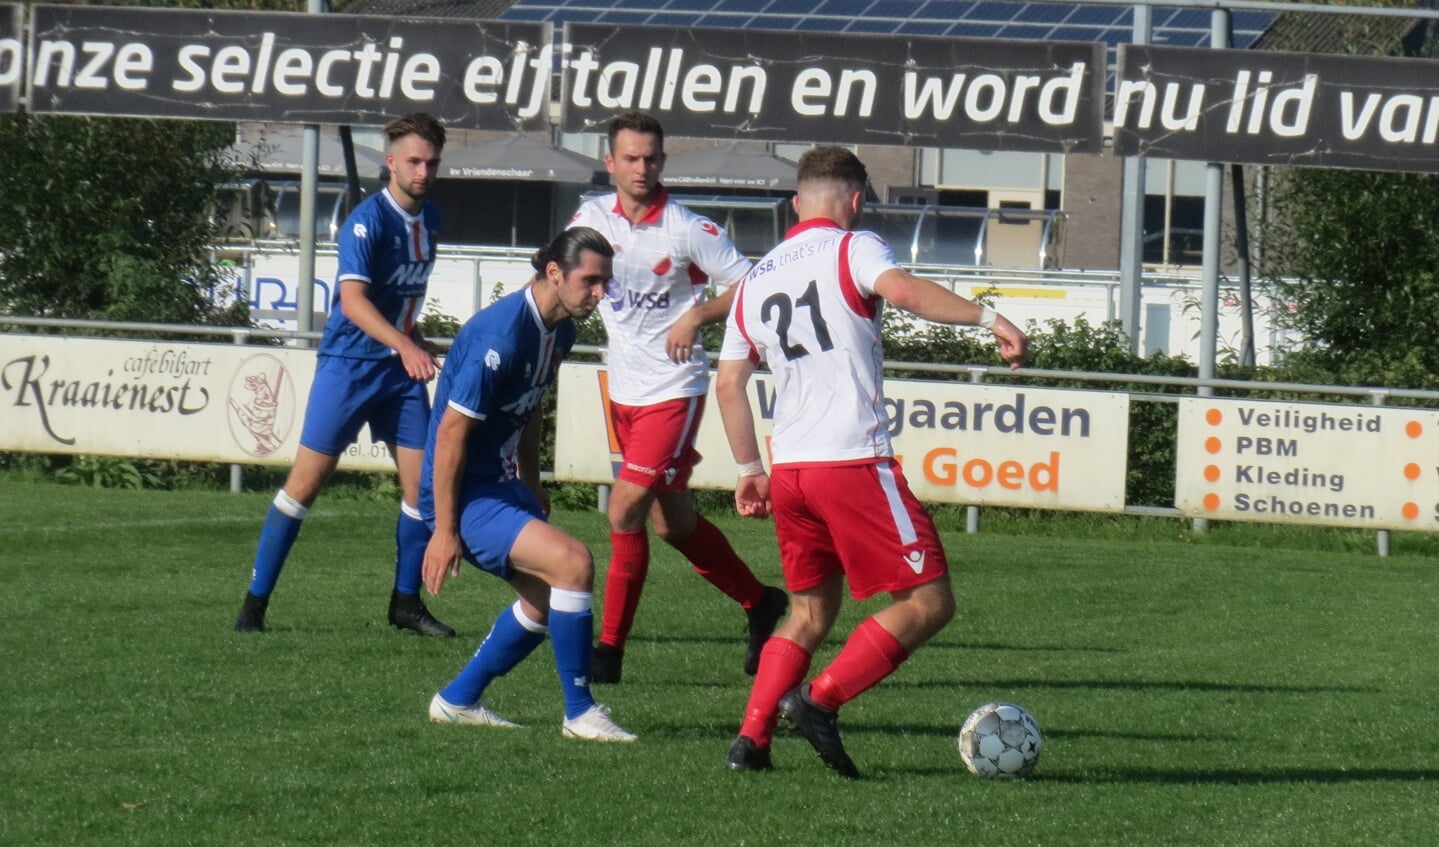 Jesper Buist (21) in duel tegen Alblasserdam, Johan Woltman ziet toe